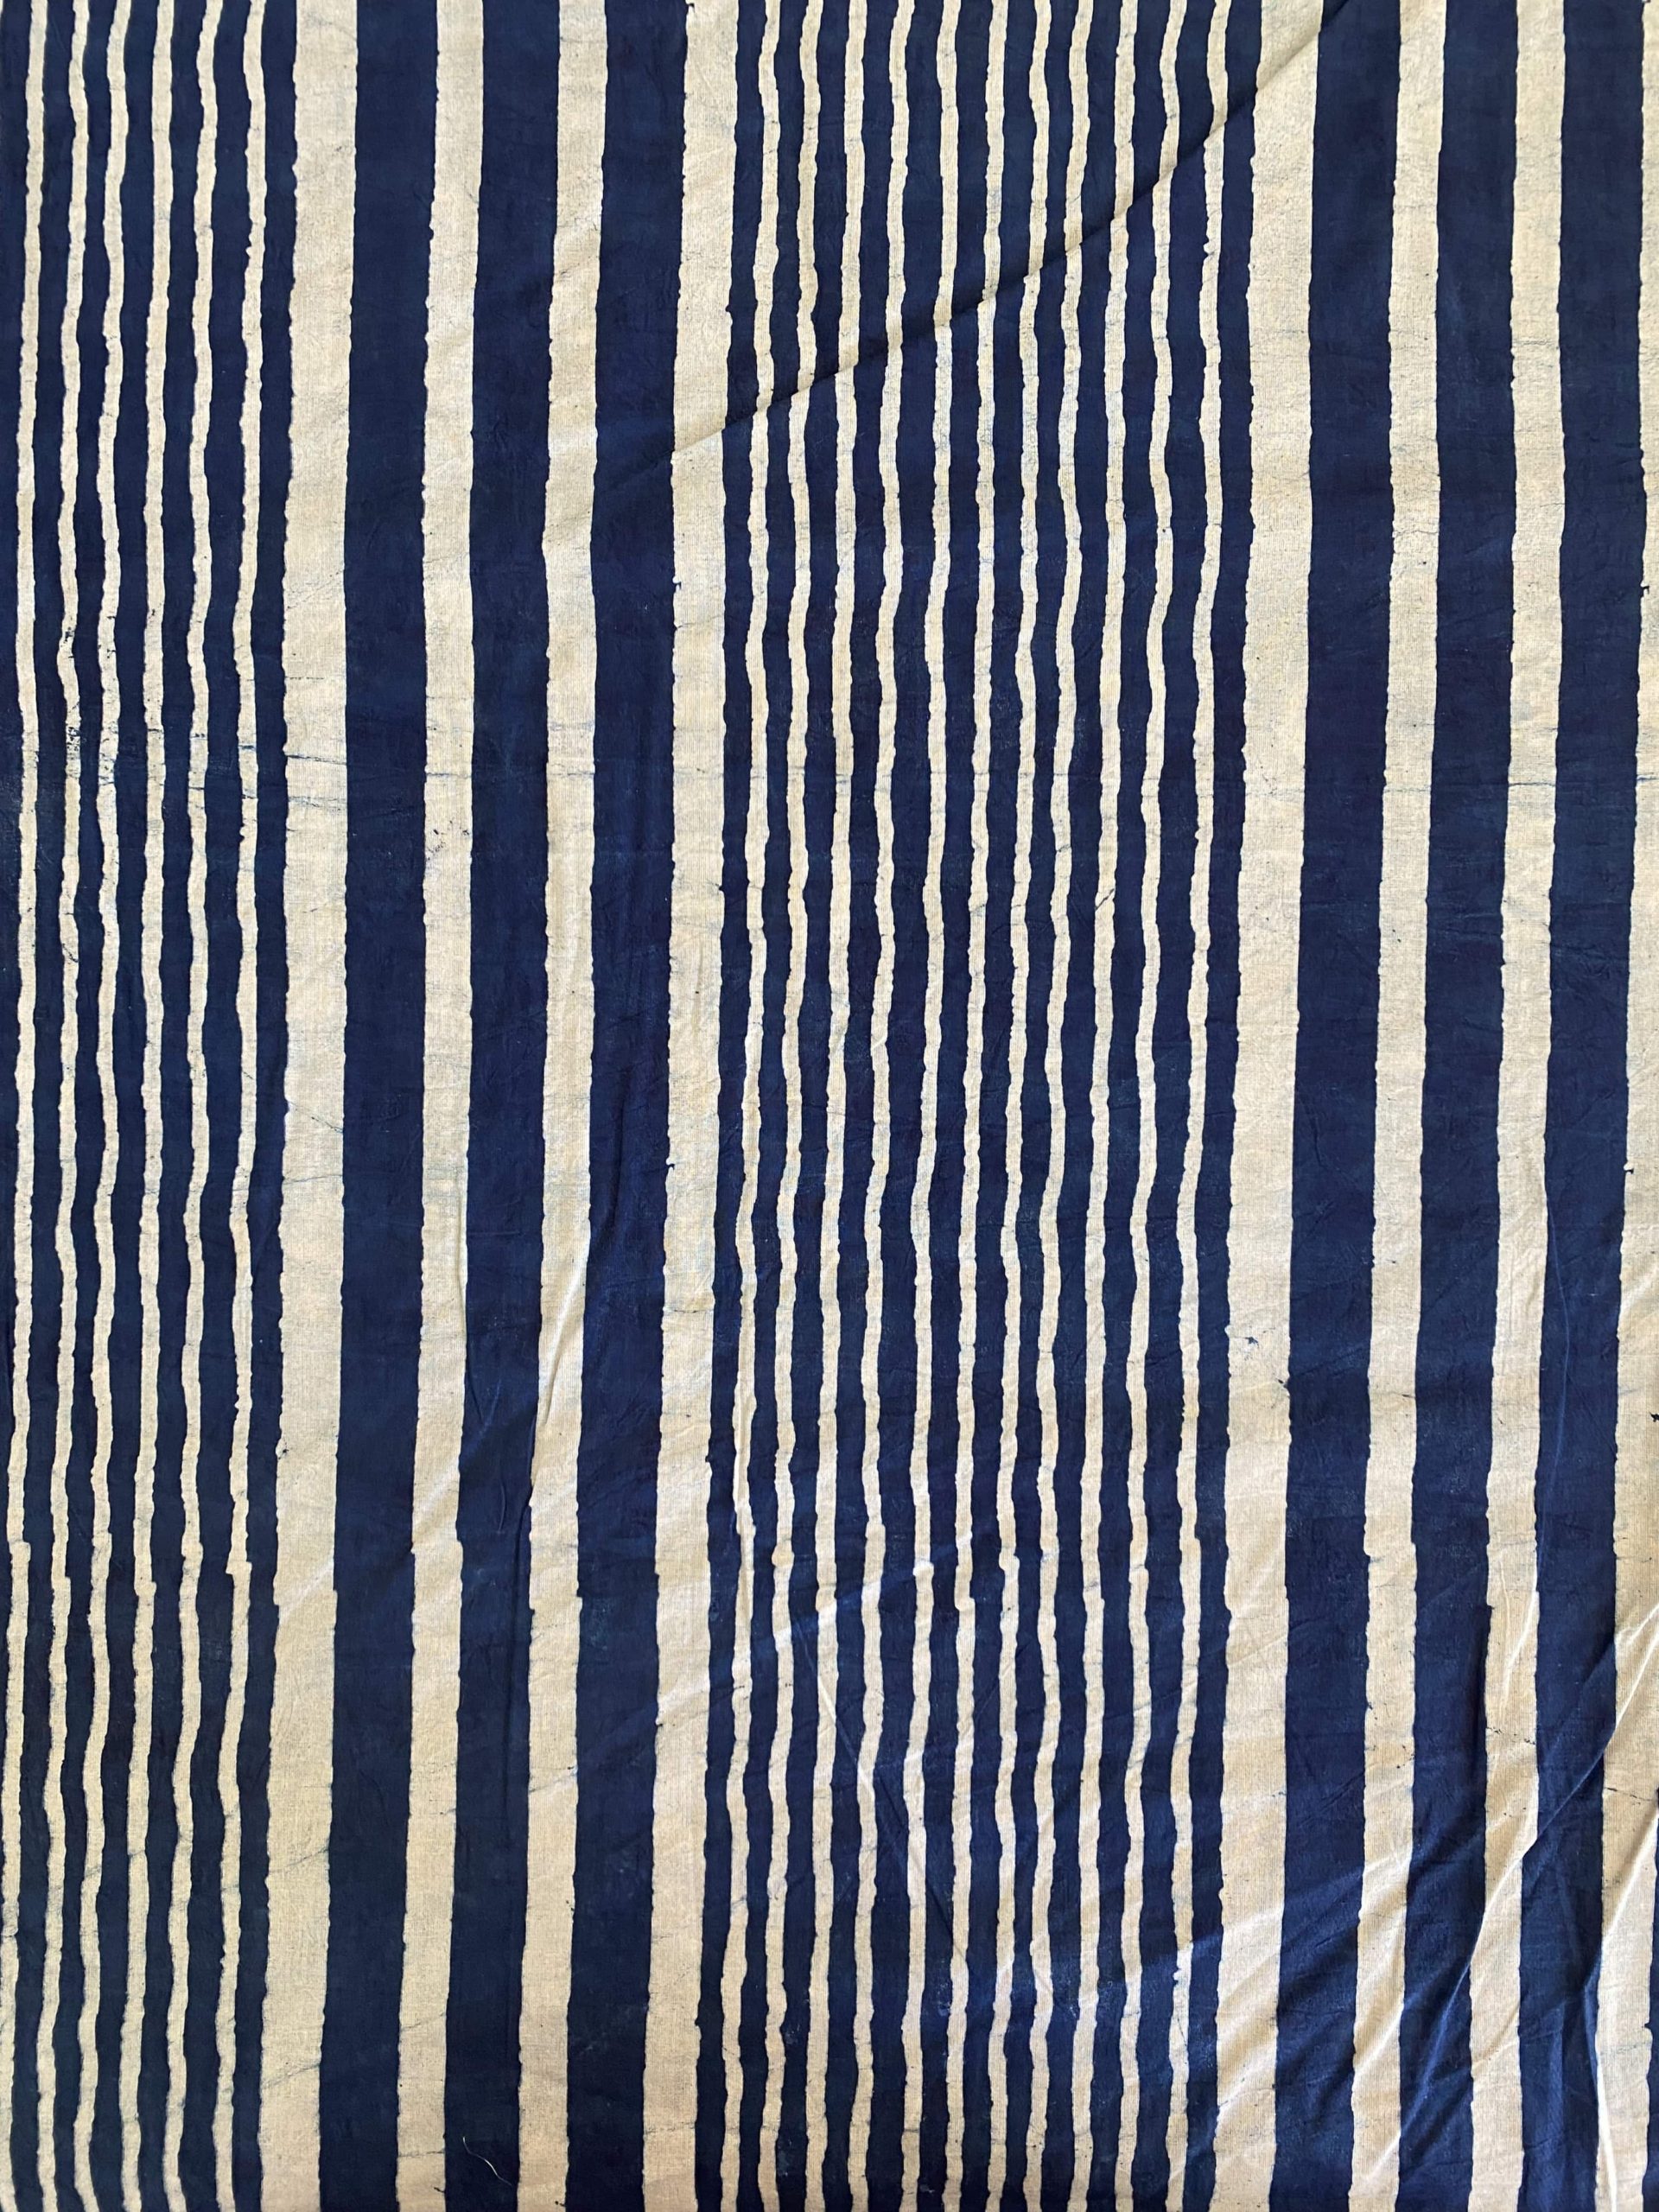 Indigo striped Indian cotton fabric - bhumi & pari